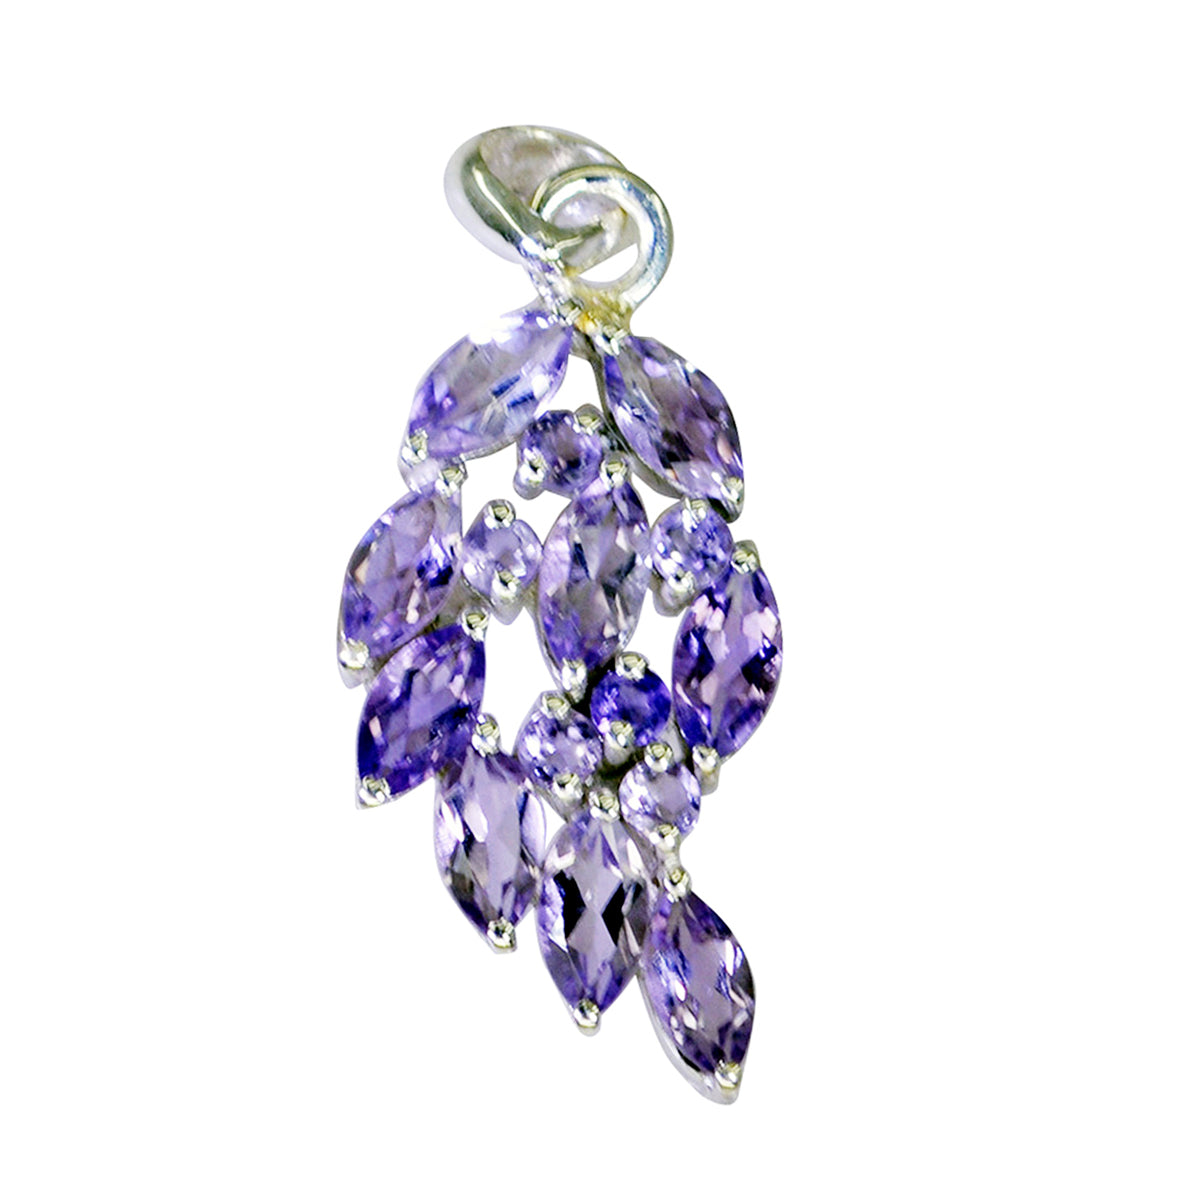 riyo agréable pierre précieuse marquise facettes violet améthyste pendentif en argent sterling cadeau pour un ami